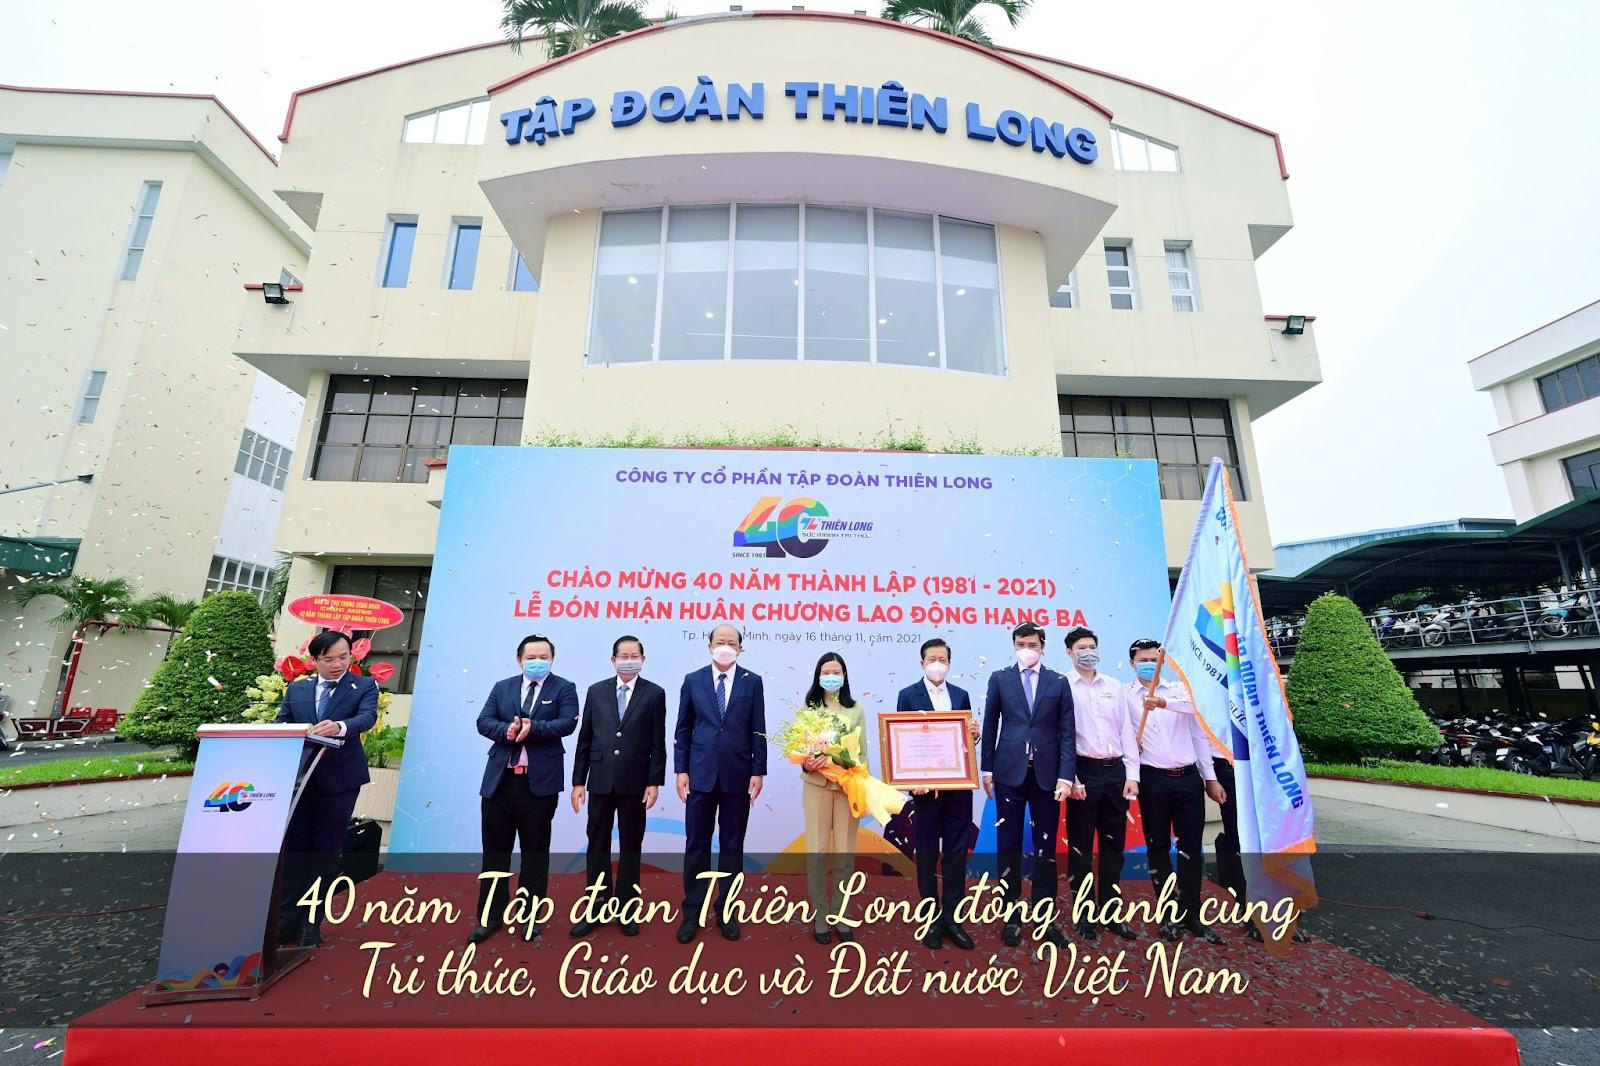 Thiên Long vào Top 100 doanh nghiệp bền vững tại Việt Nam sáu lần liên tiếp - Ảnh 3.